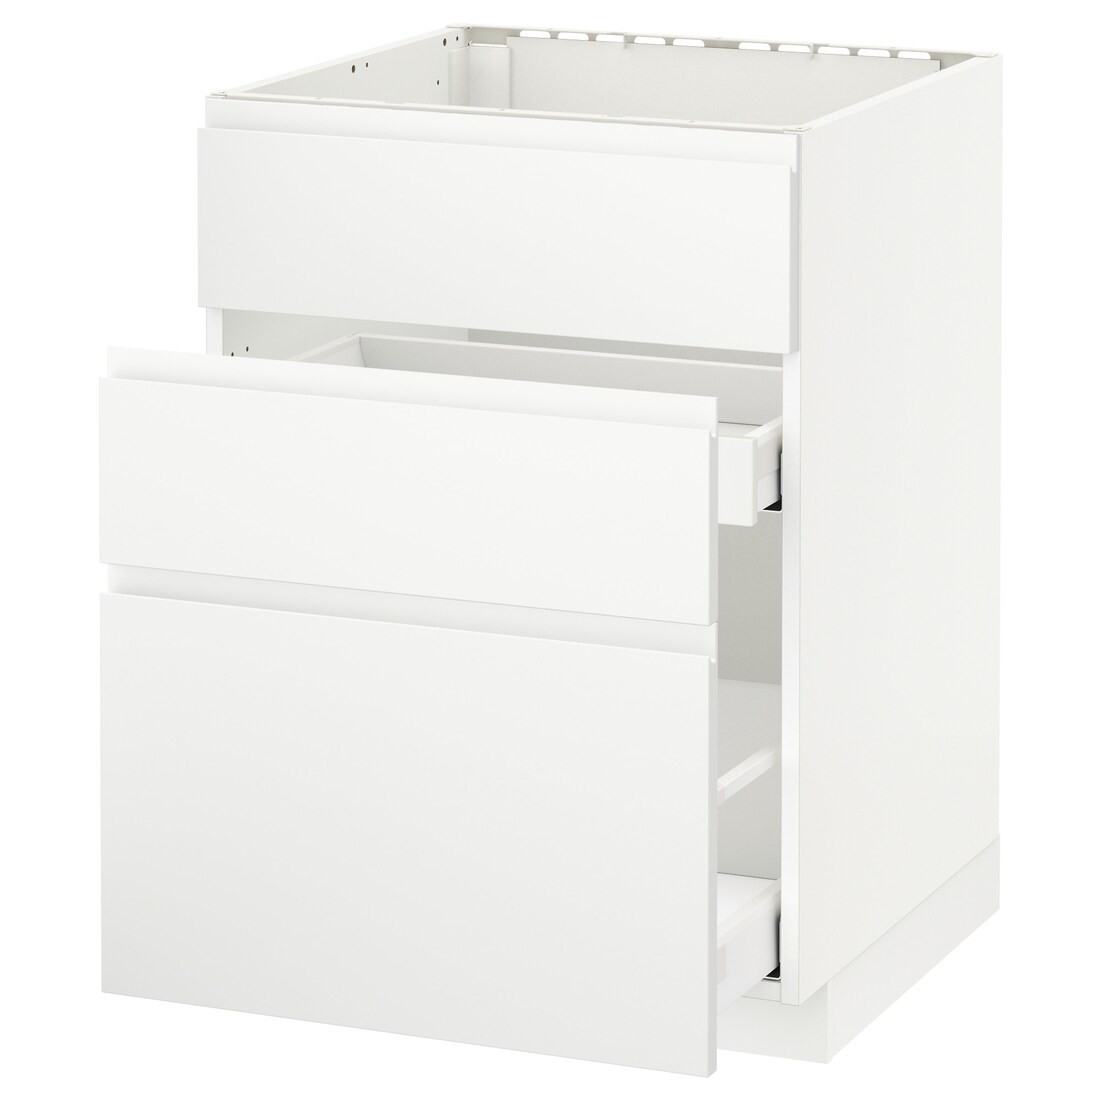 IKEA METOD МЕТОД / MAXIMERA МАКСИМЕРА Напольный шкаф под мойку с ящиками, белый / Voxtorp матовый белый, 60x60 см 39112110 391.121.10